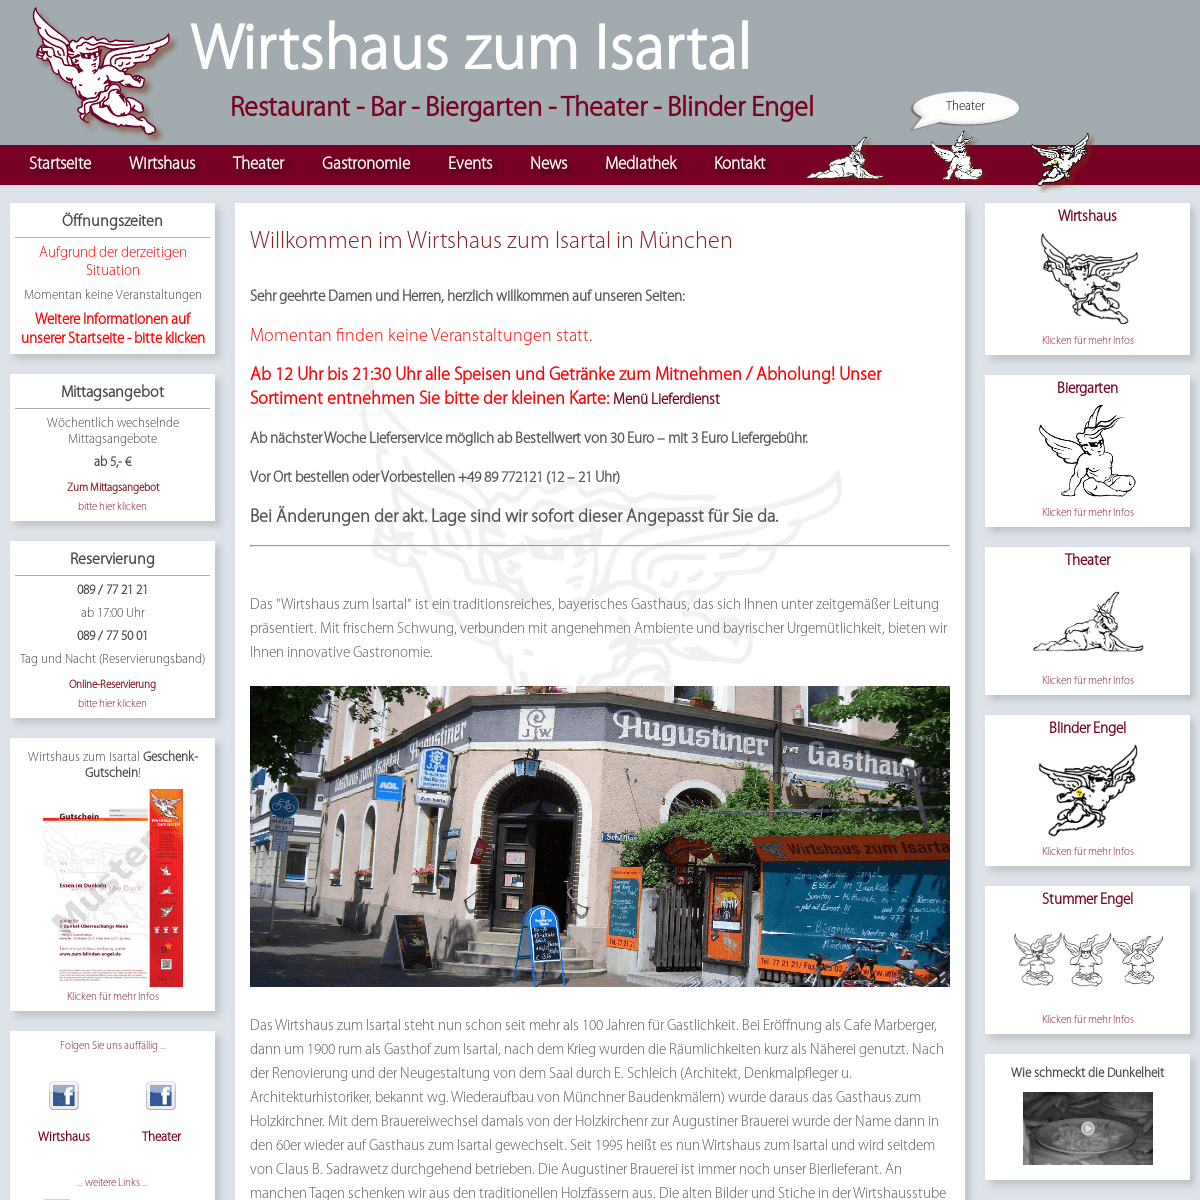 A complete backup of wirtshaus-zum-isartal.de